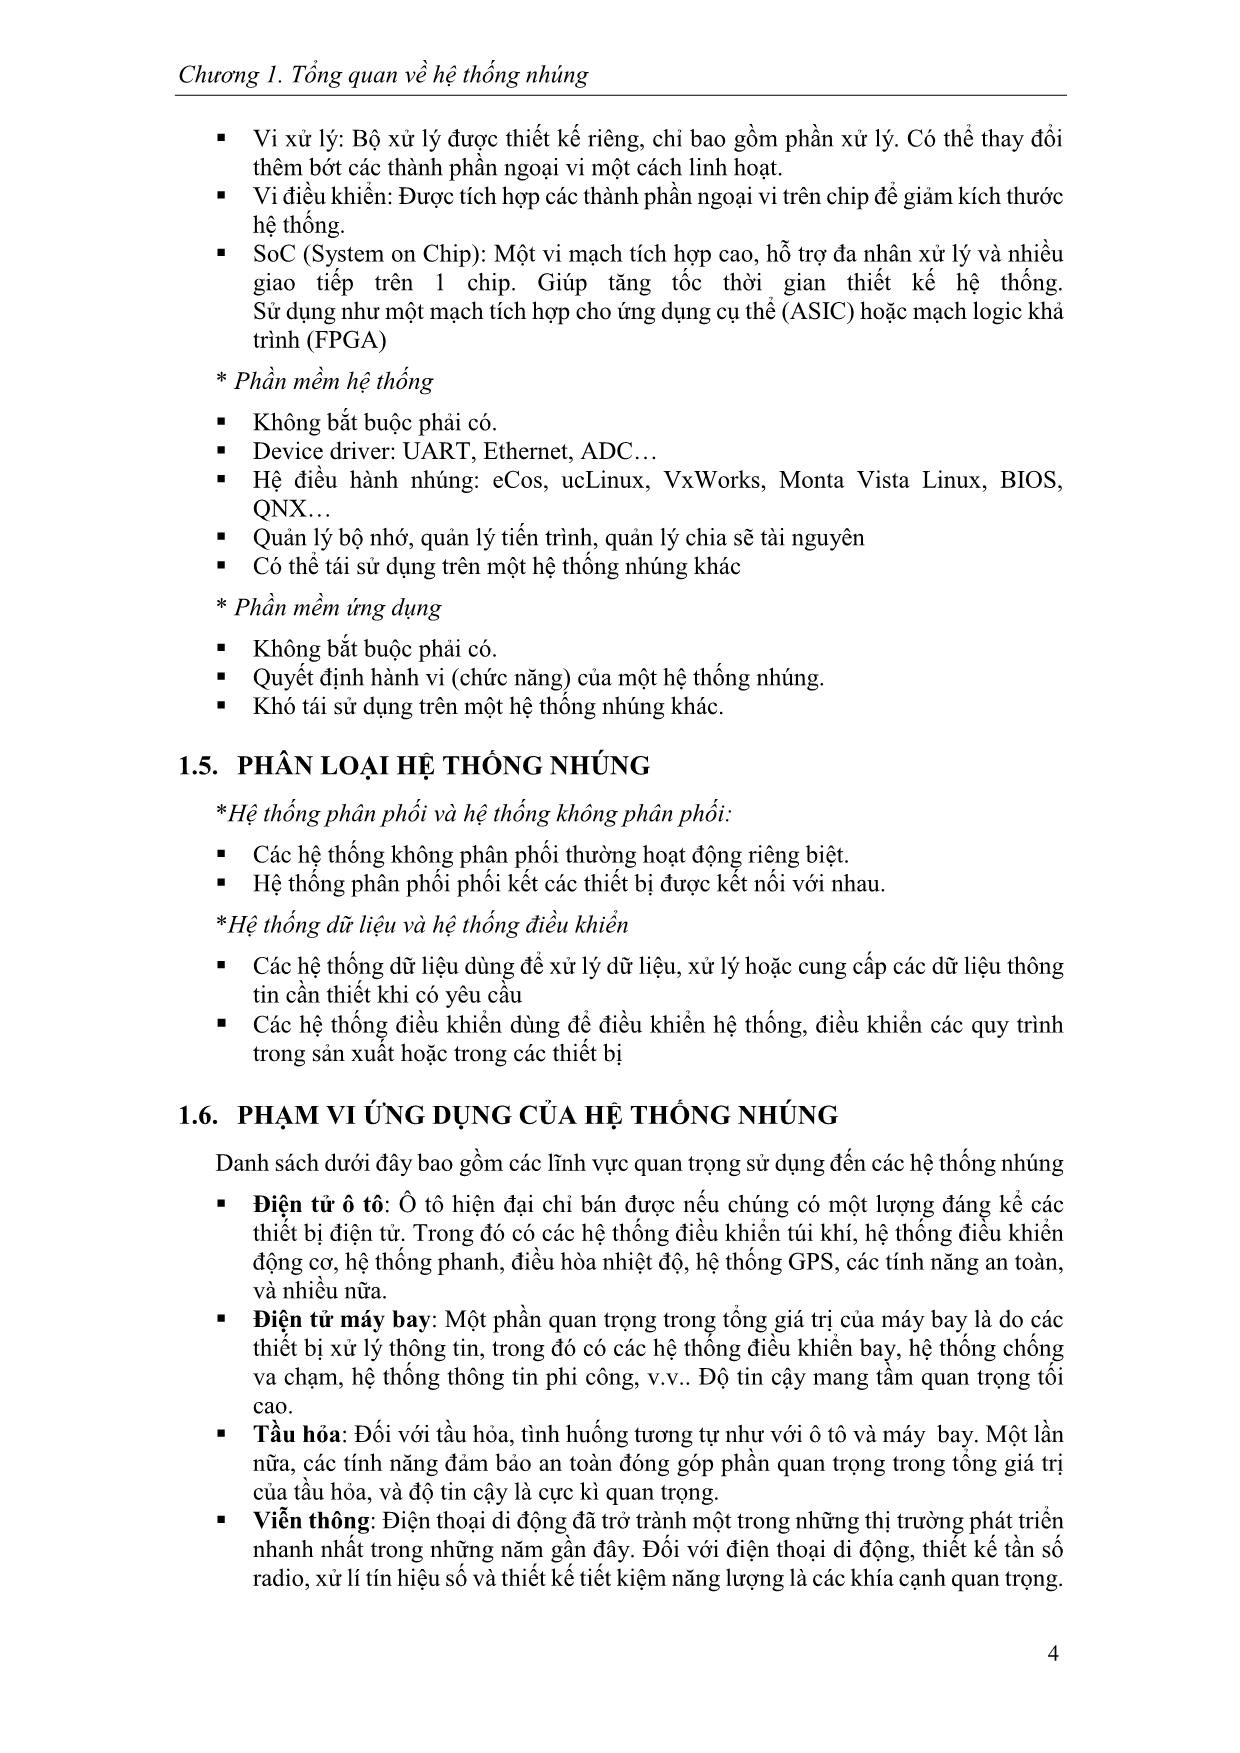 Giáo trình Hệ thống nhúng (Phần 1) trang 8